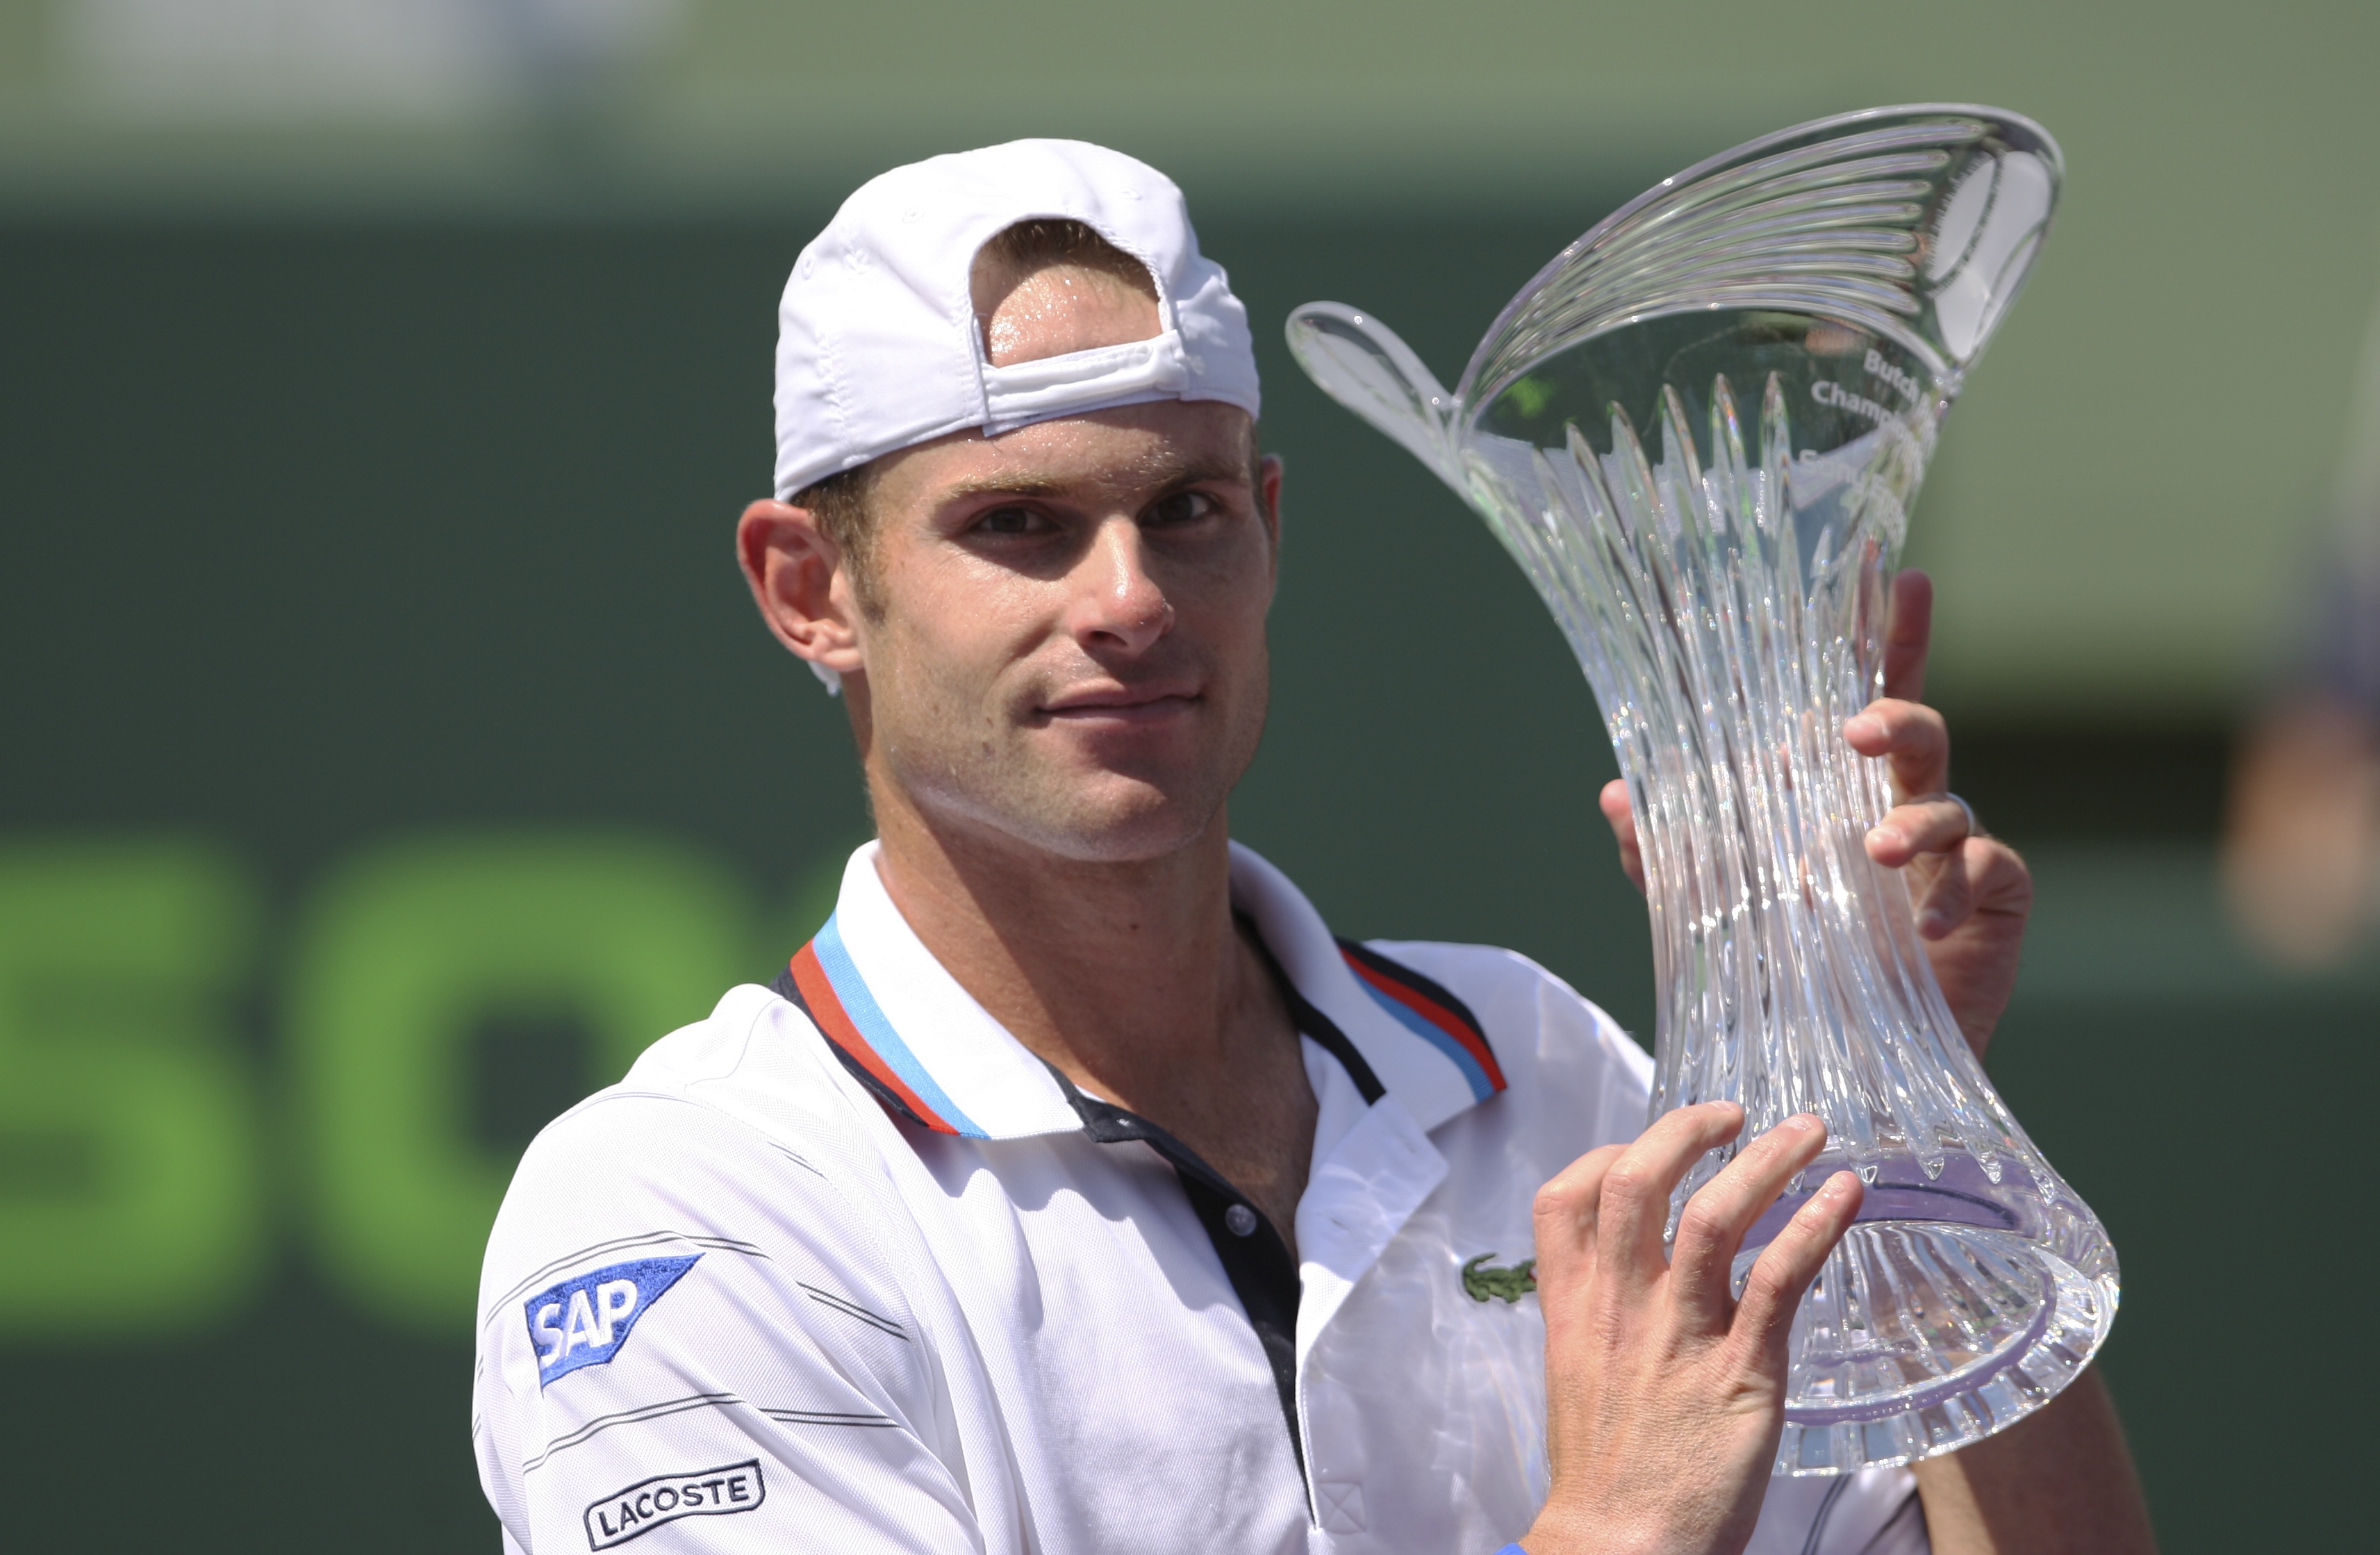 Miami Mastersturnering, Andy Roddick, Tomas Berdych, ATP, Tennis